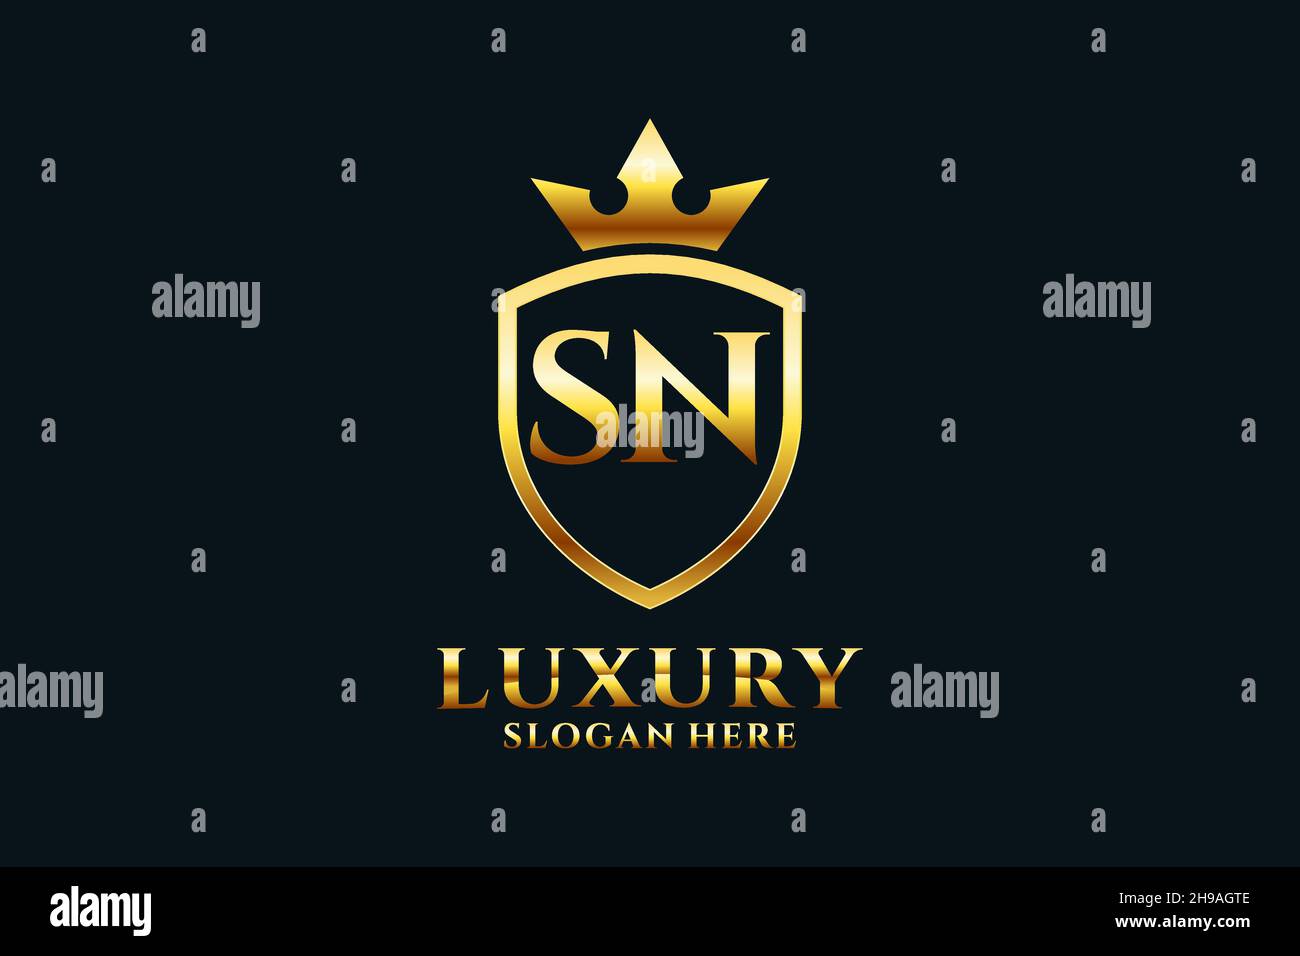 SN Elegantes Luxus-Monogramm-Logo oder Badge-Vorlage mit Rollen und königlicher Krone - perfekt für luxuriöse Branding-Projekte Stock Vektor